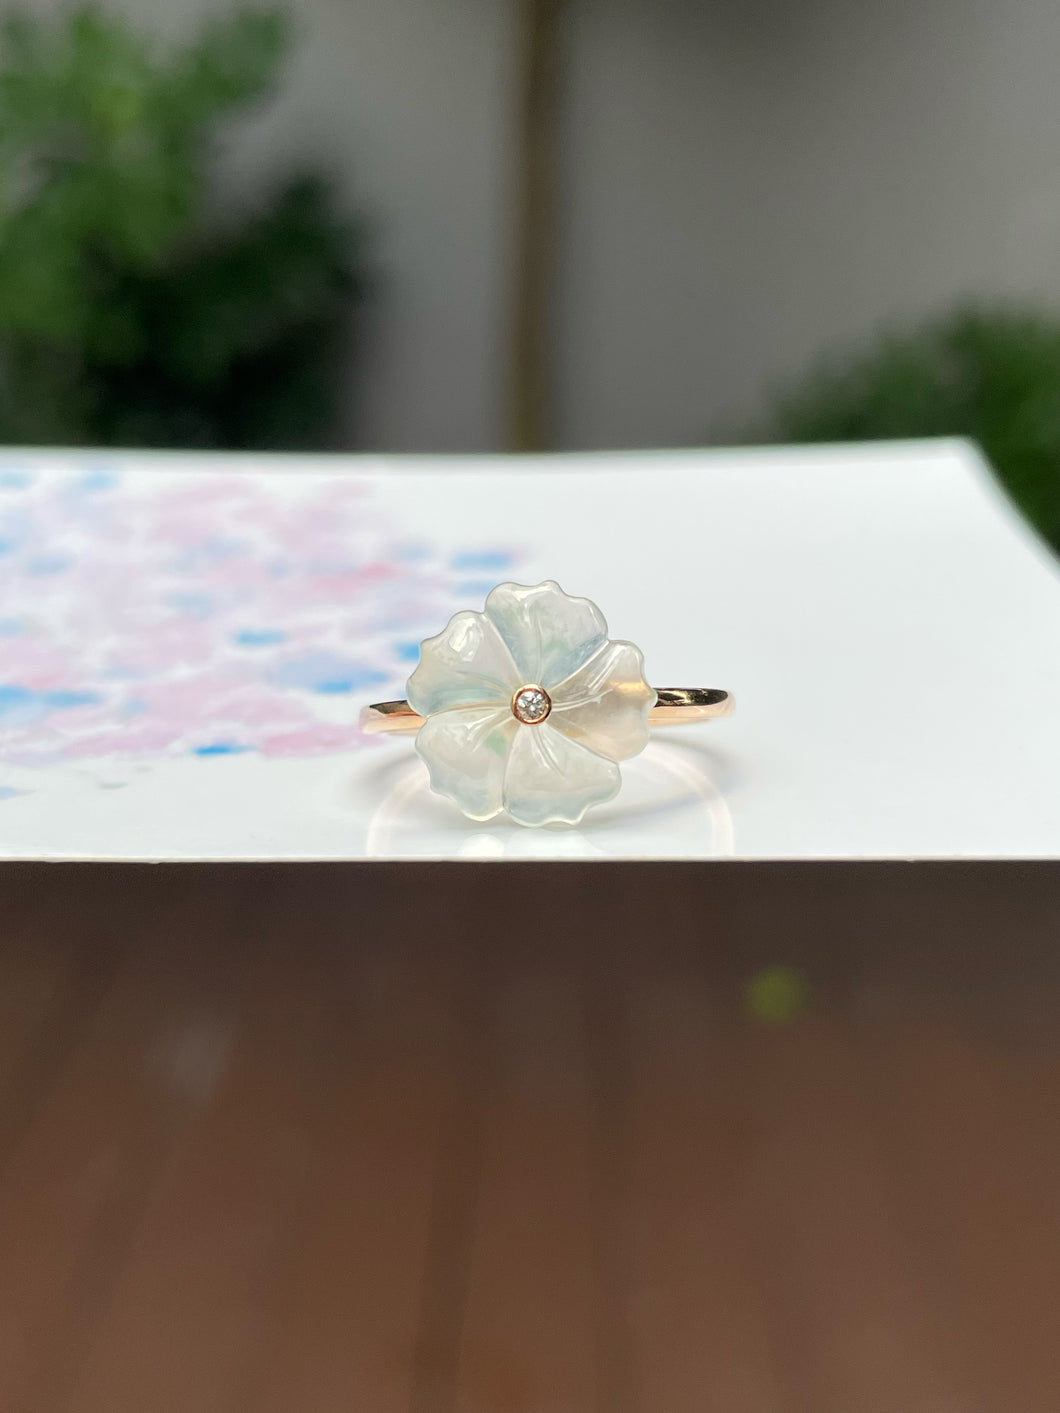 Glassy Jade Ring - Plum Blossom (NJR178)